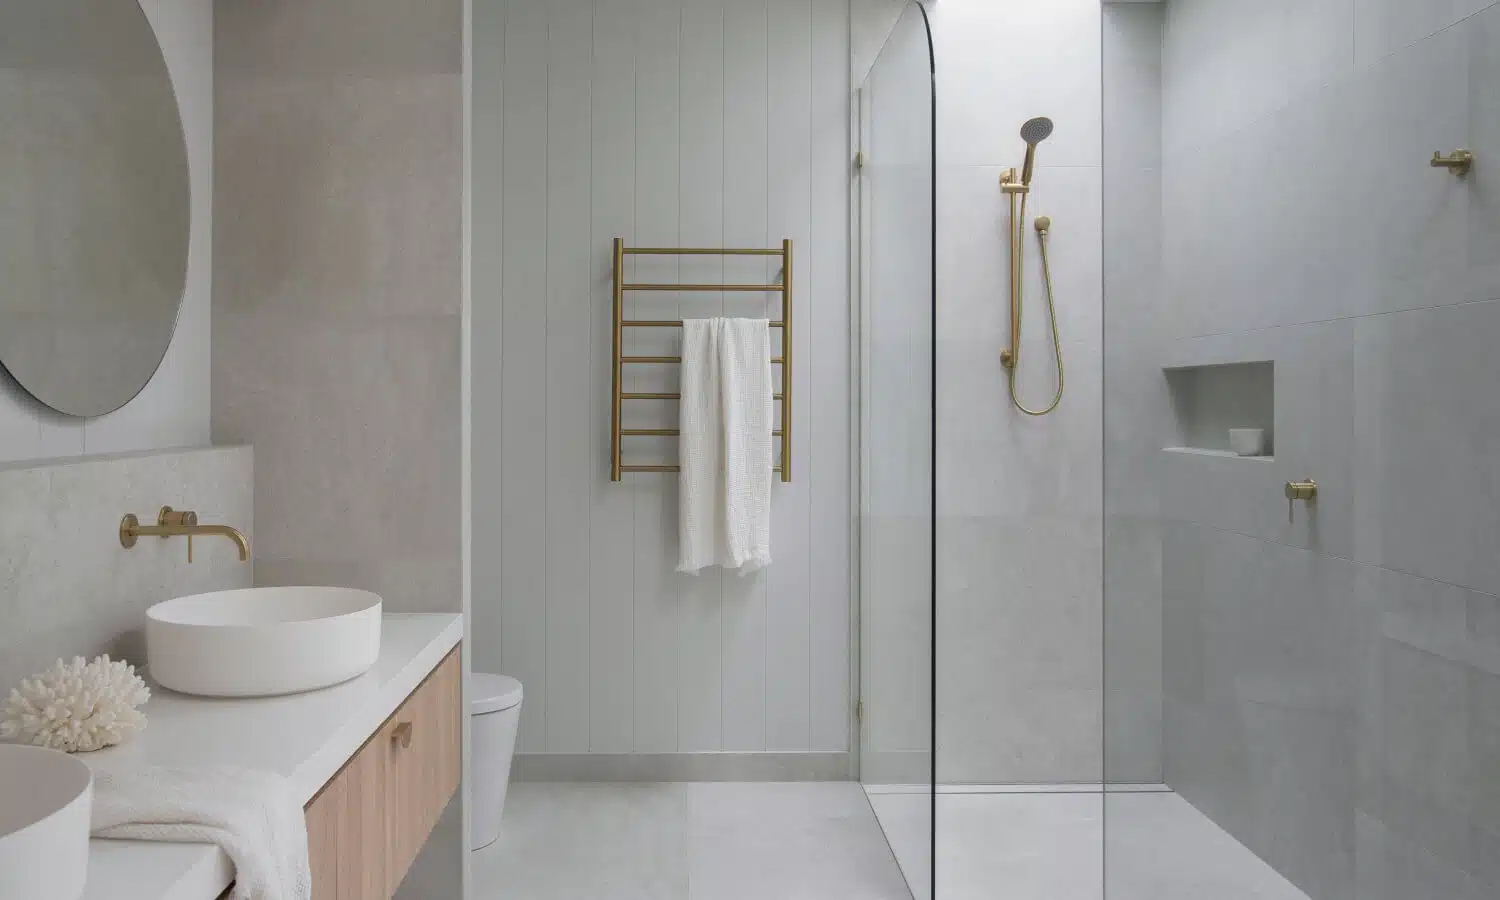 Caillebotis pour douche : praticité et esthétique pour votre salle de bain